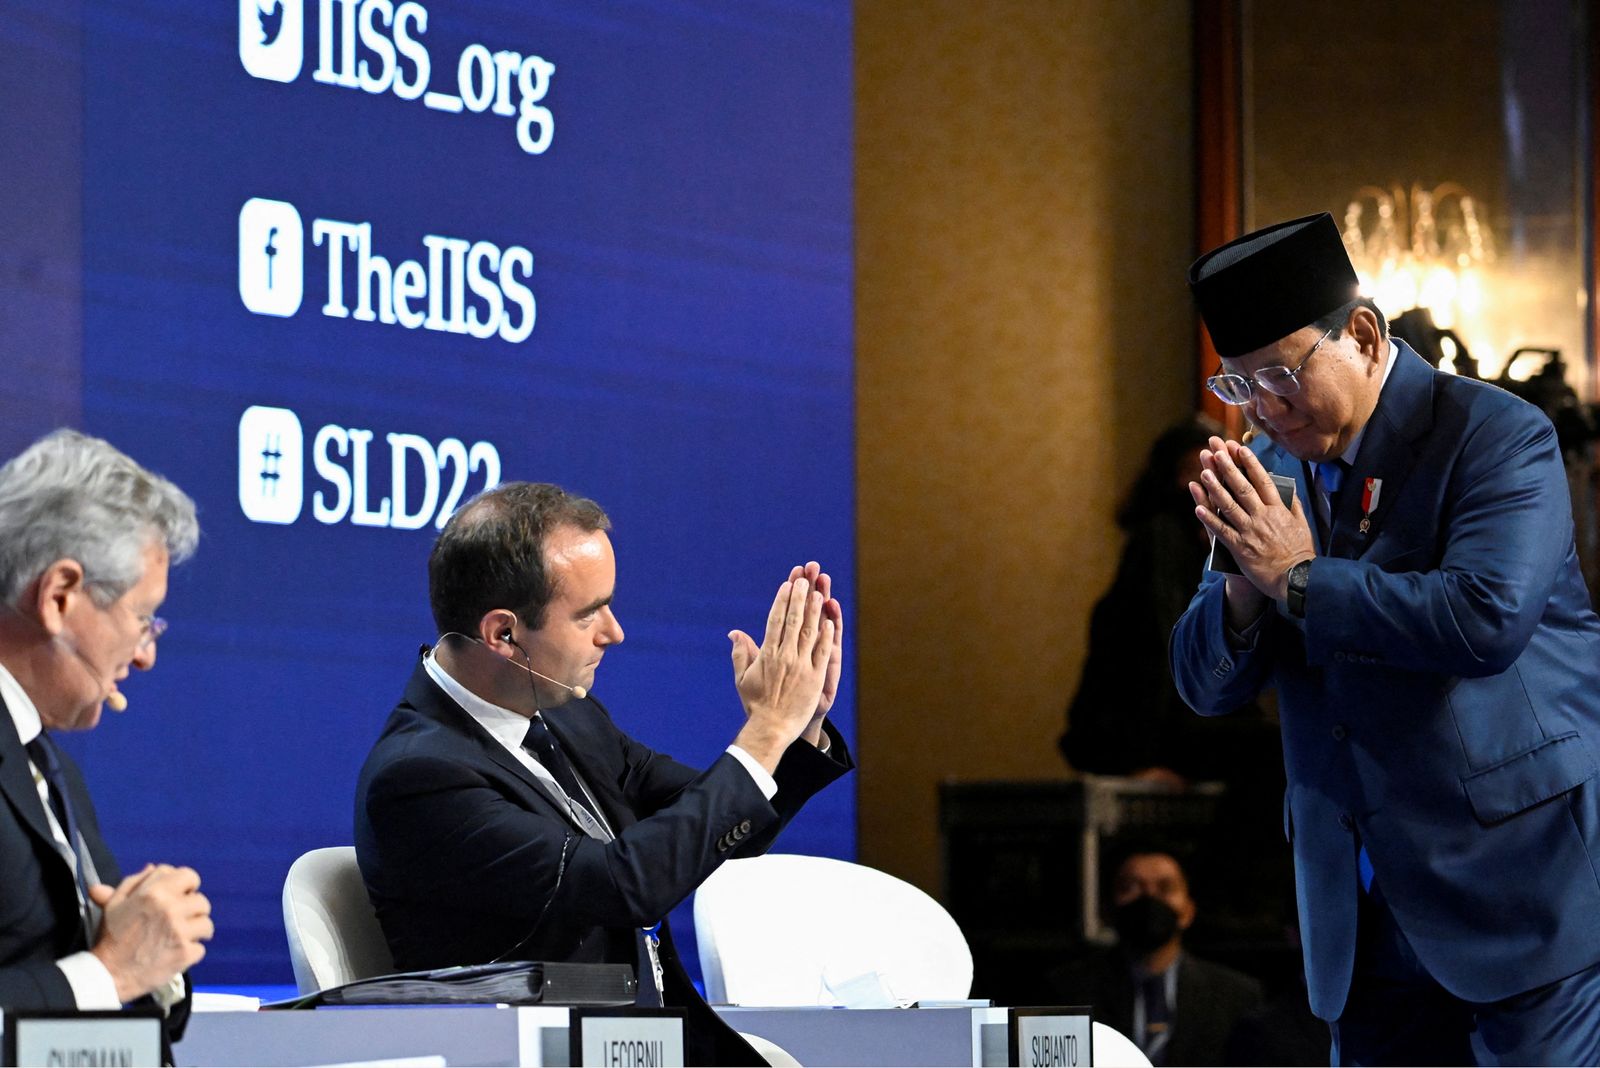 وزير الدفاع الفرنسي سيباستيان ليكورنو يحيي نظيره الإندونيسي برابوو سوبيانتو قبل عقد جلسة في 